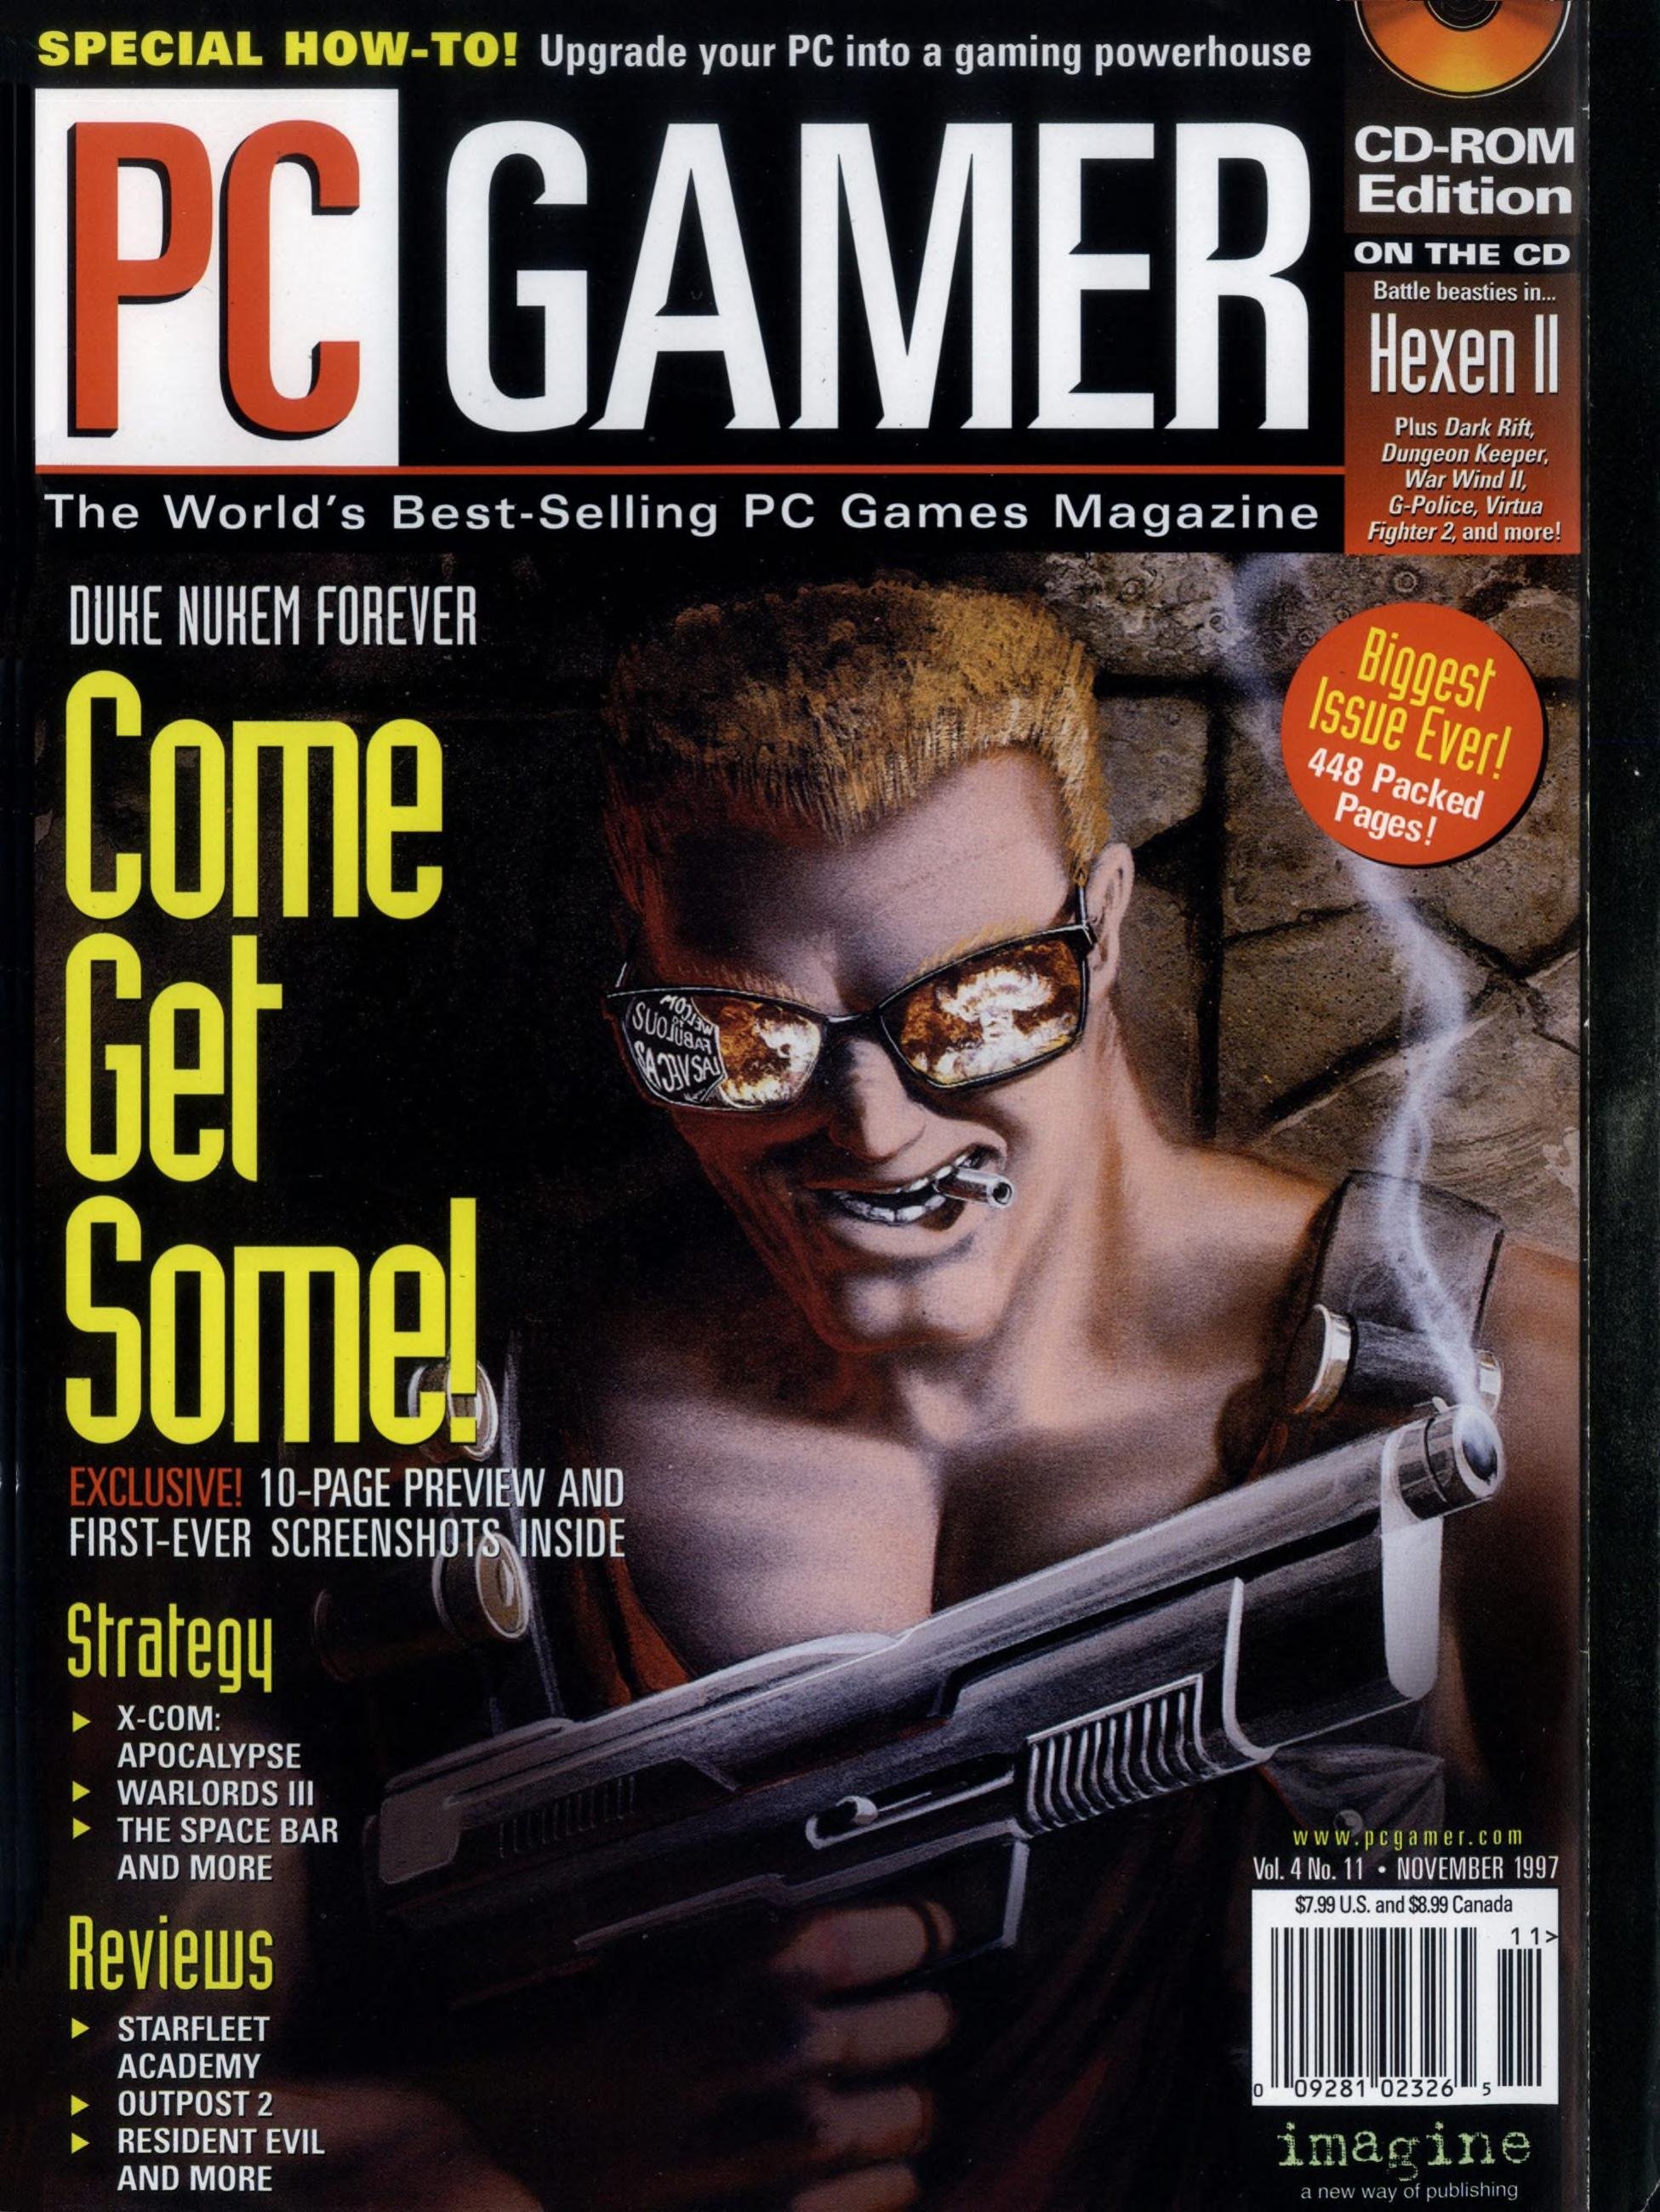 Ис журнал. PC Gamer журнал. Обложка журнала PC Gamer. Журналы про игры. PC игры журнал.